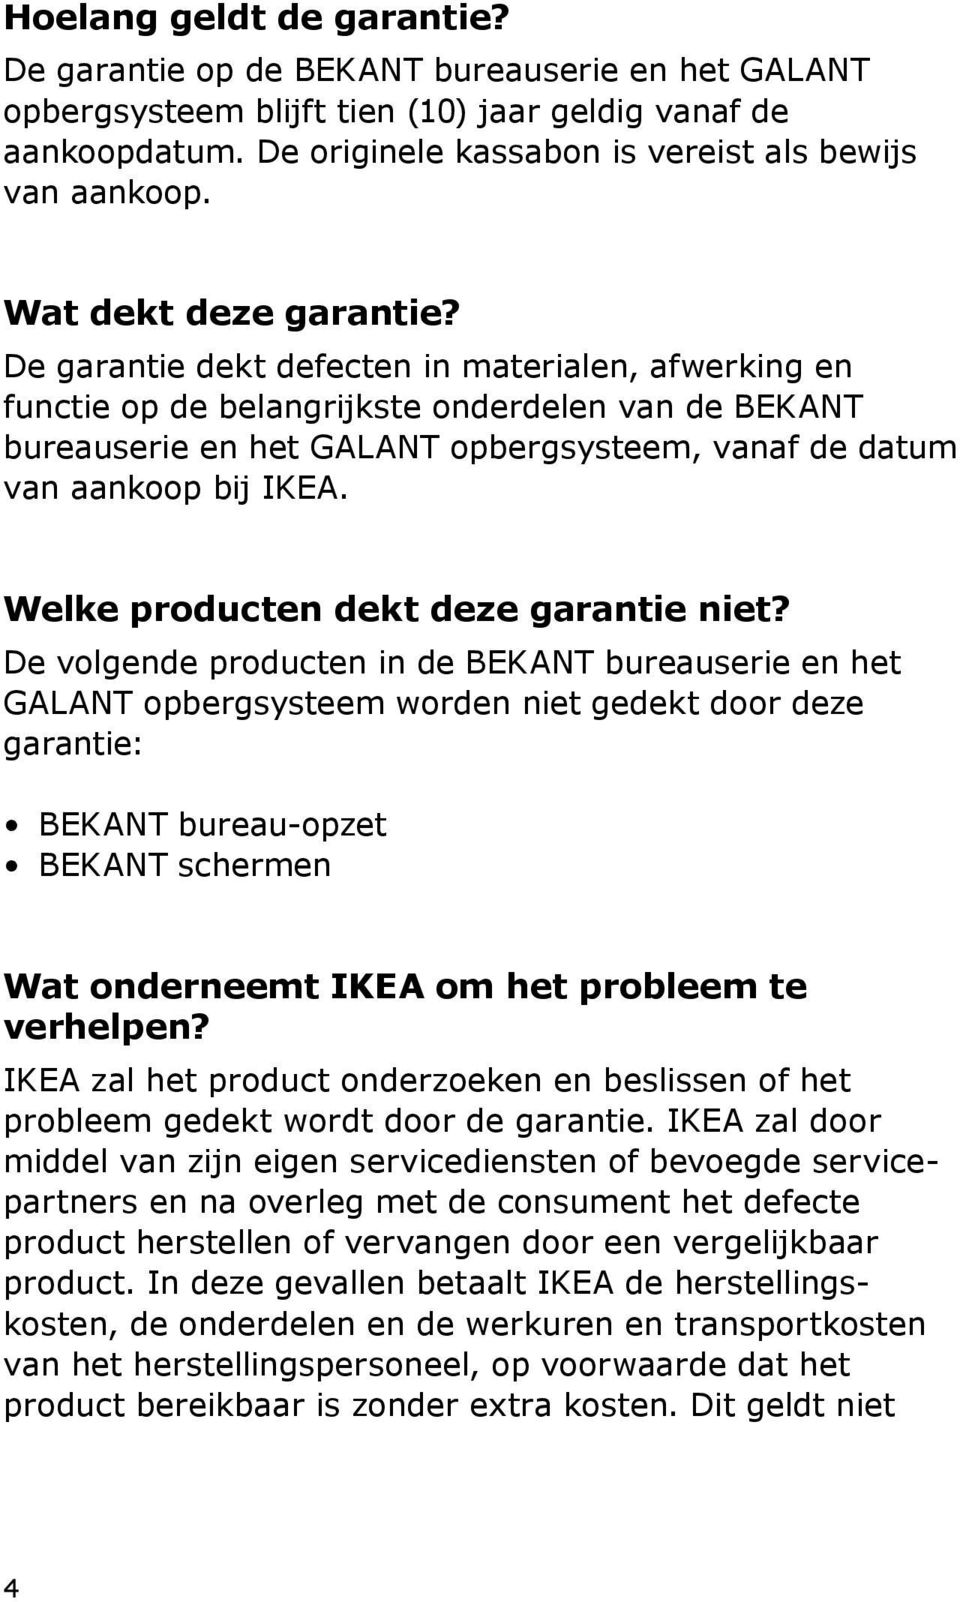 De garantie dekt defecten in materialen, afwerking en functie op de belangrijkste onderdelen van de BEKANT bureauserie en het GALANT opbergsysteem, vanaf de datum van aankoop bij IKEA.